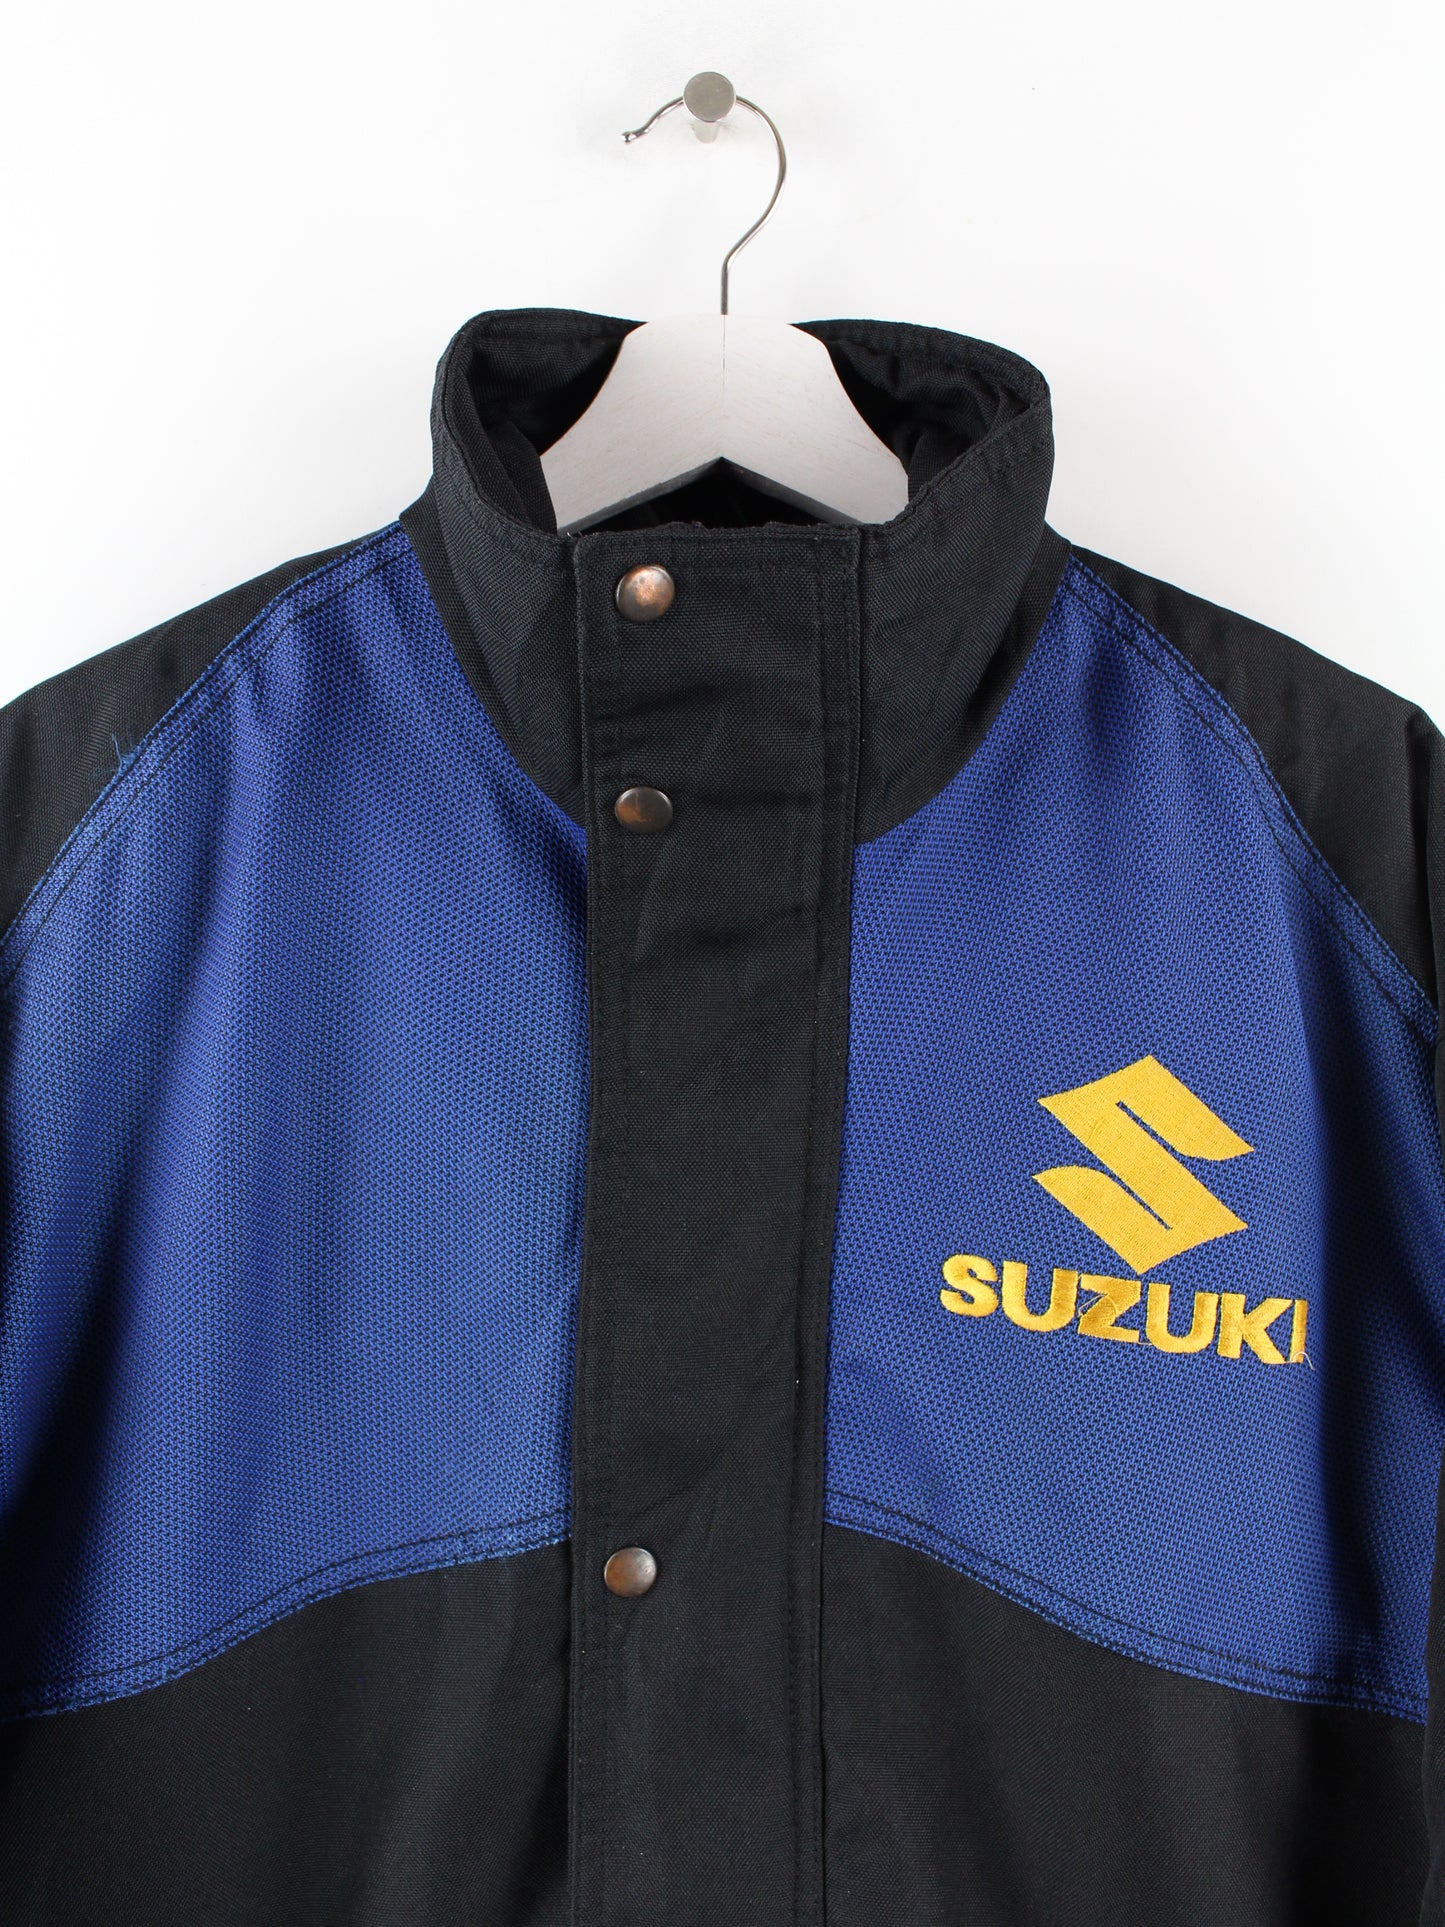 Vintage Suzuki Racing Jacke Schwarz XL